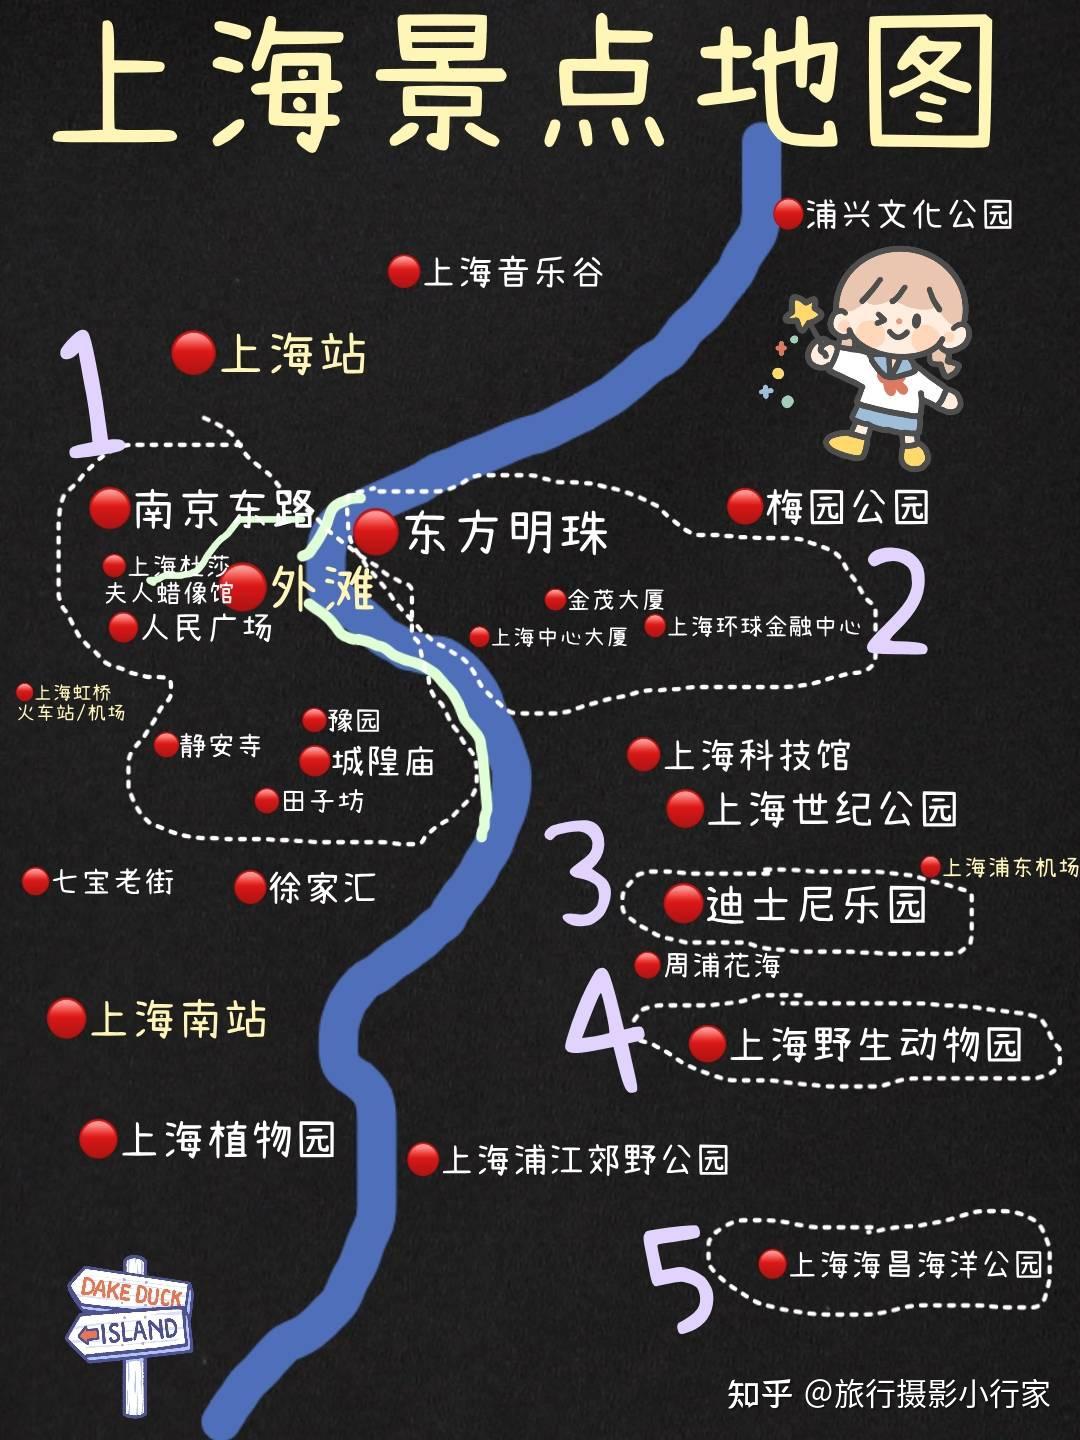 上海旅游行李寄存攻略景点地图地铁沿线景点及上海美食